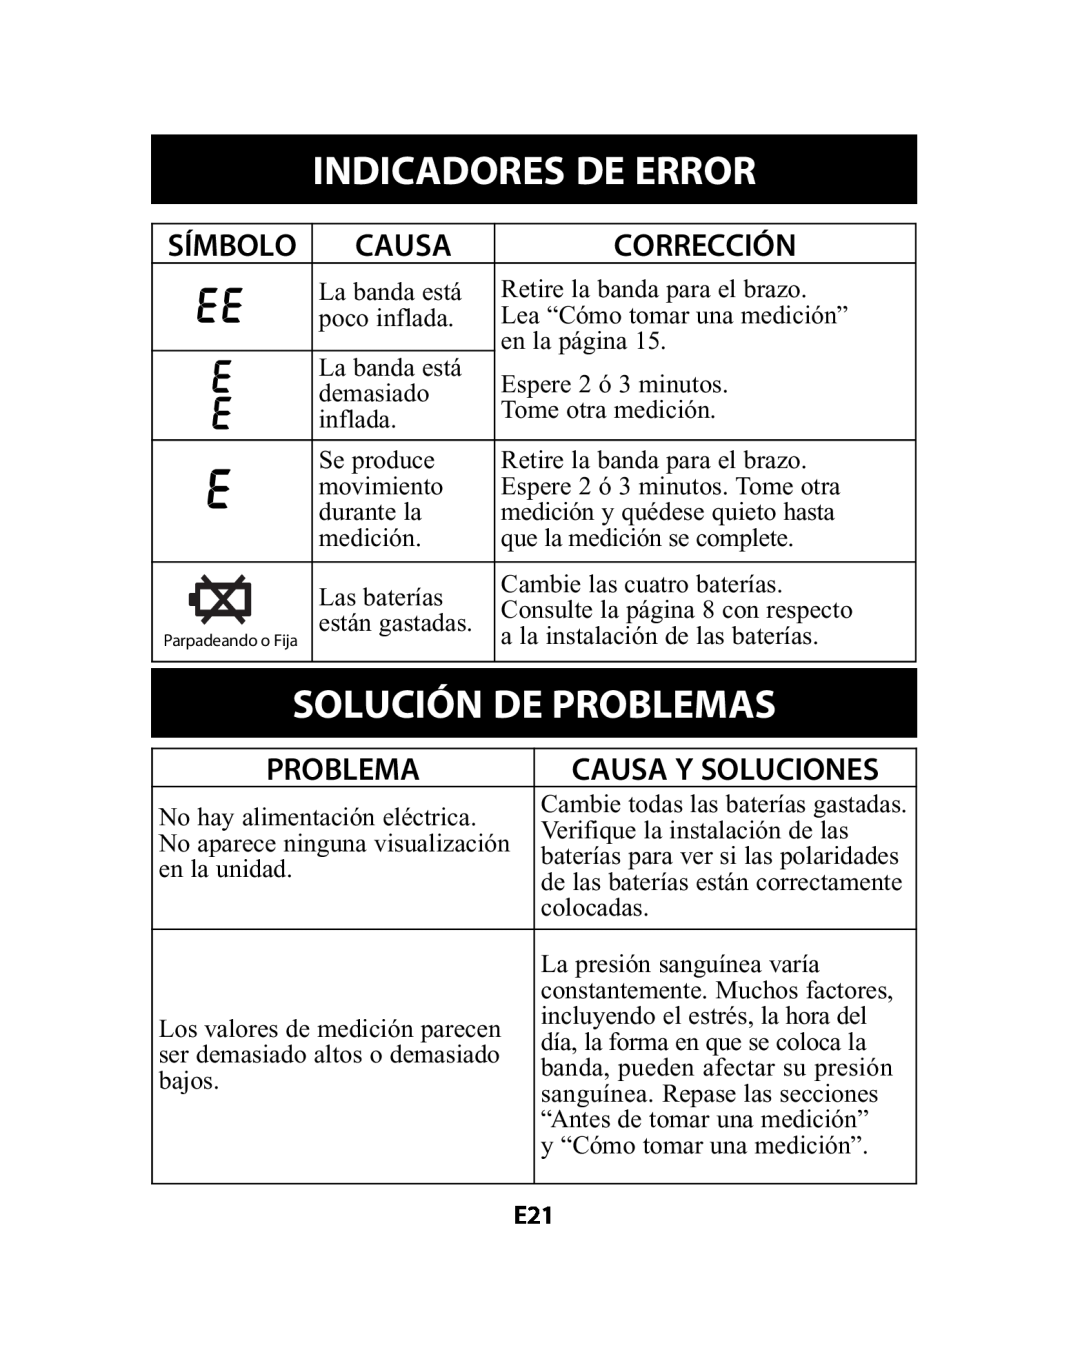 Omron Healthcare HEM-741CREL Indicadores De Error, Solución De Problemas, Corrección, Símbolo, Causa Y Soluciones 